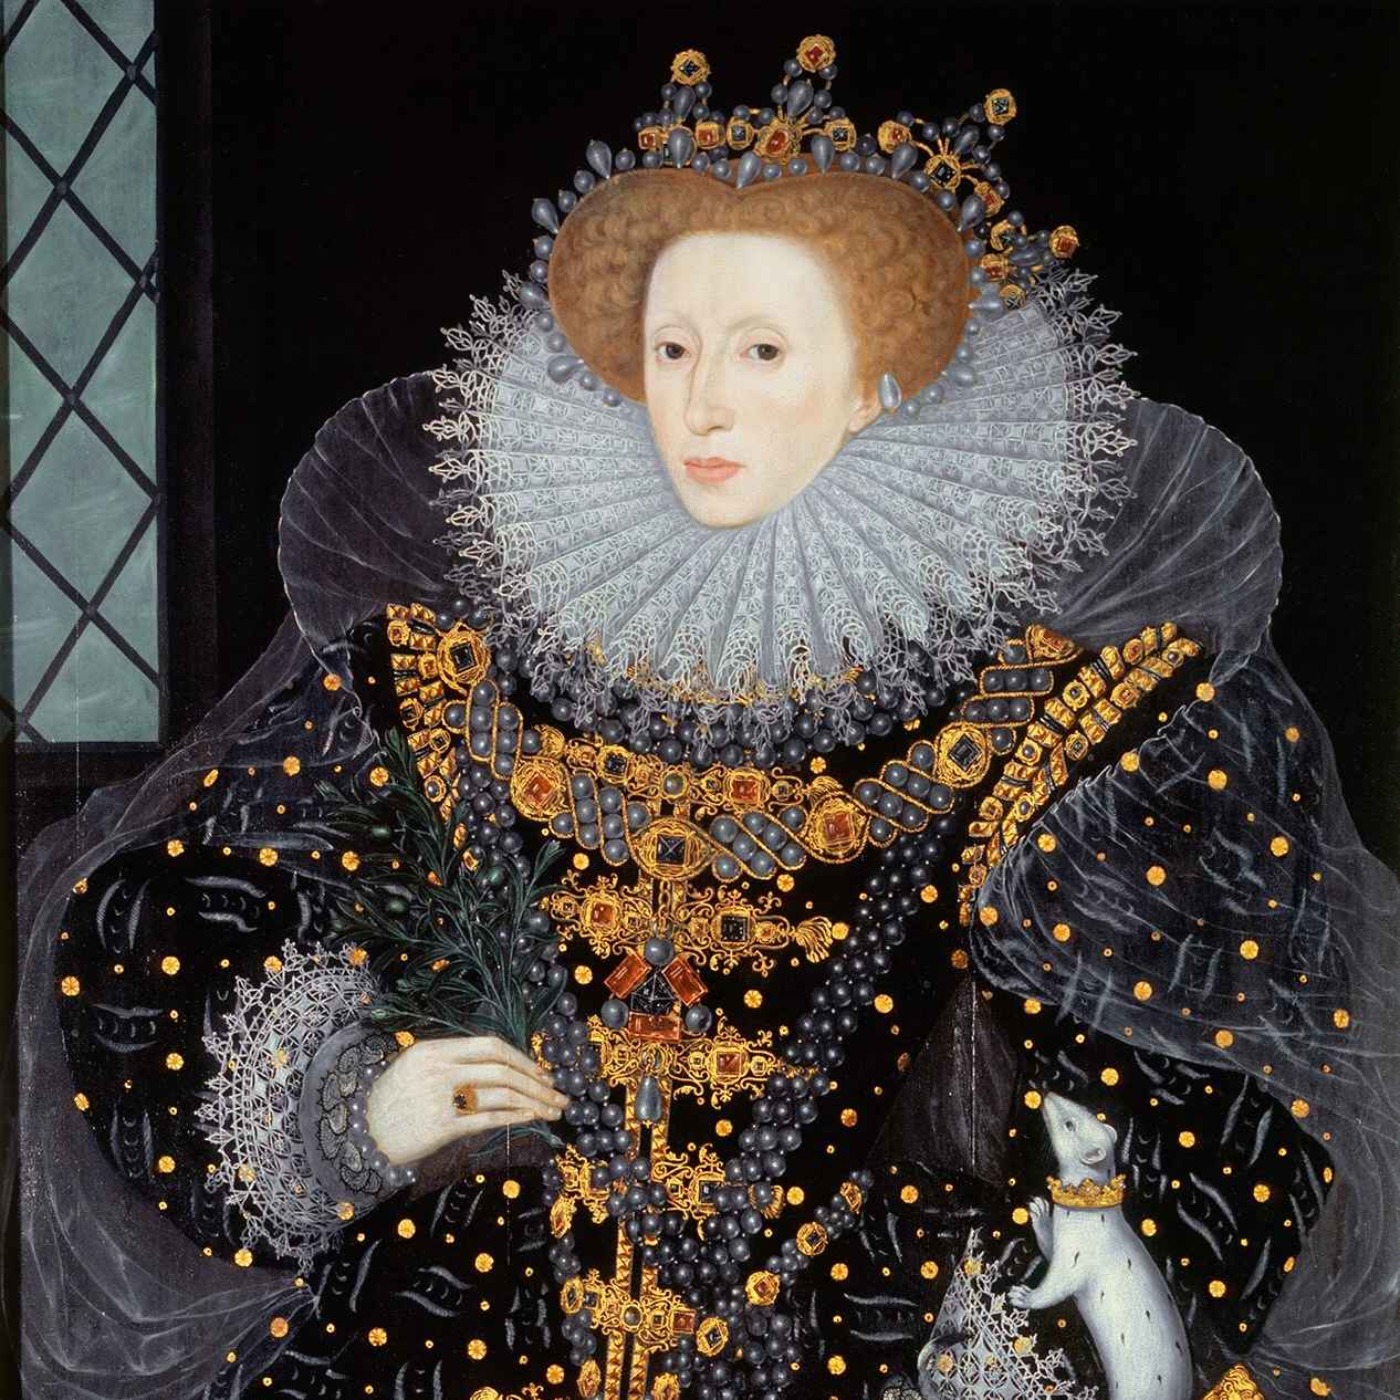 66. Elizabeth I: En guldålder med problem